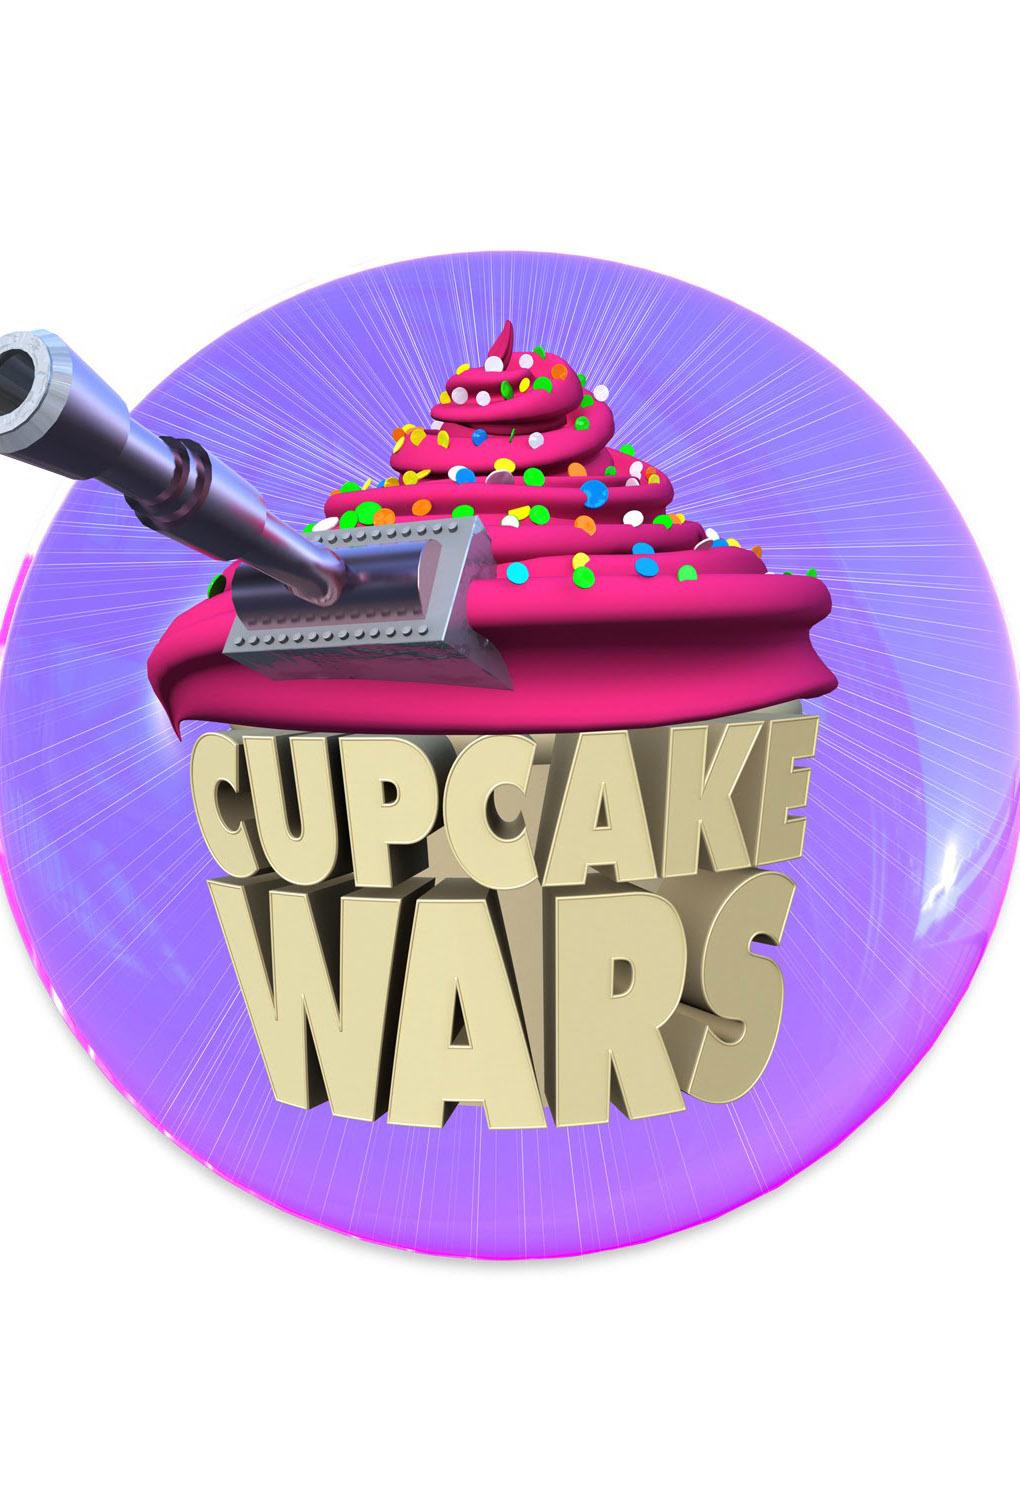 TV ratings for Cupcake Wars in Norway. Food Network TV series